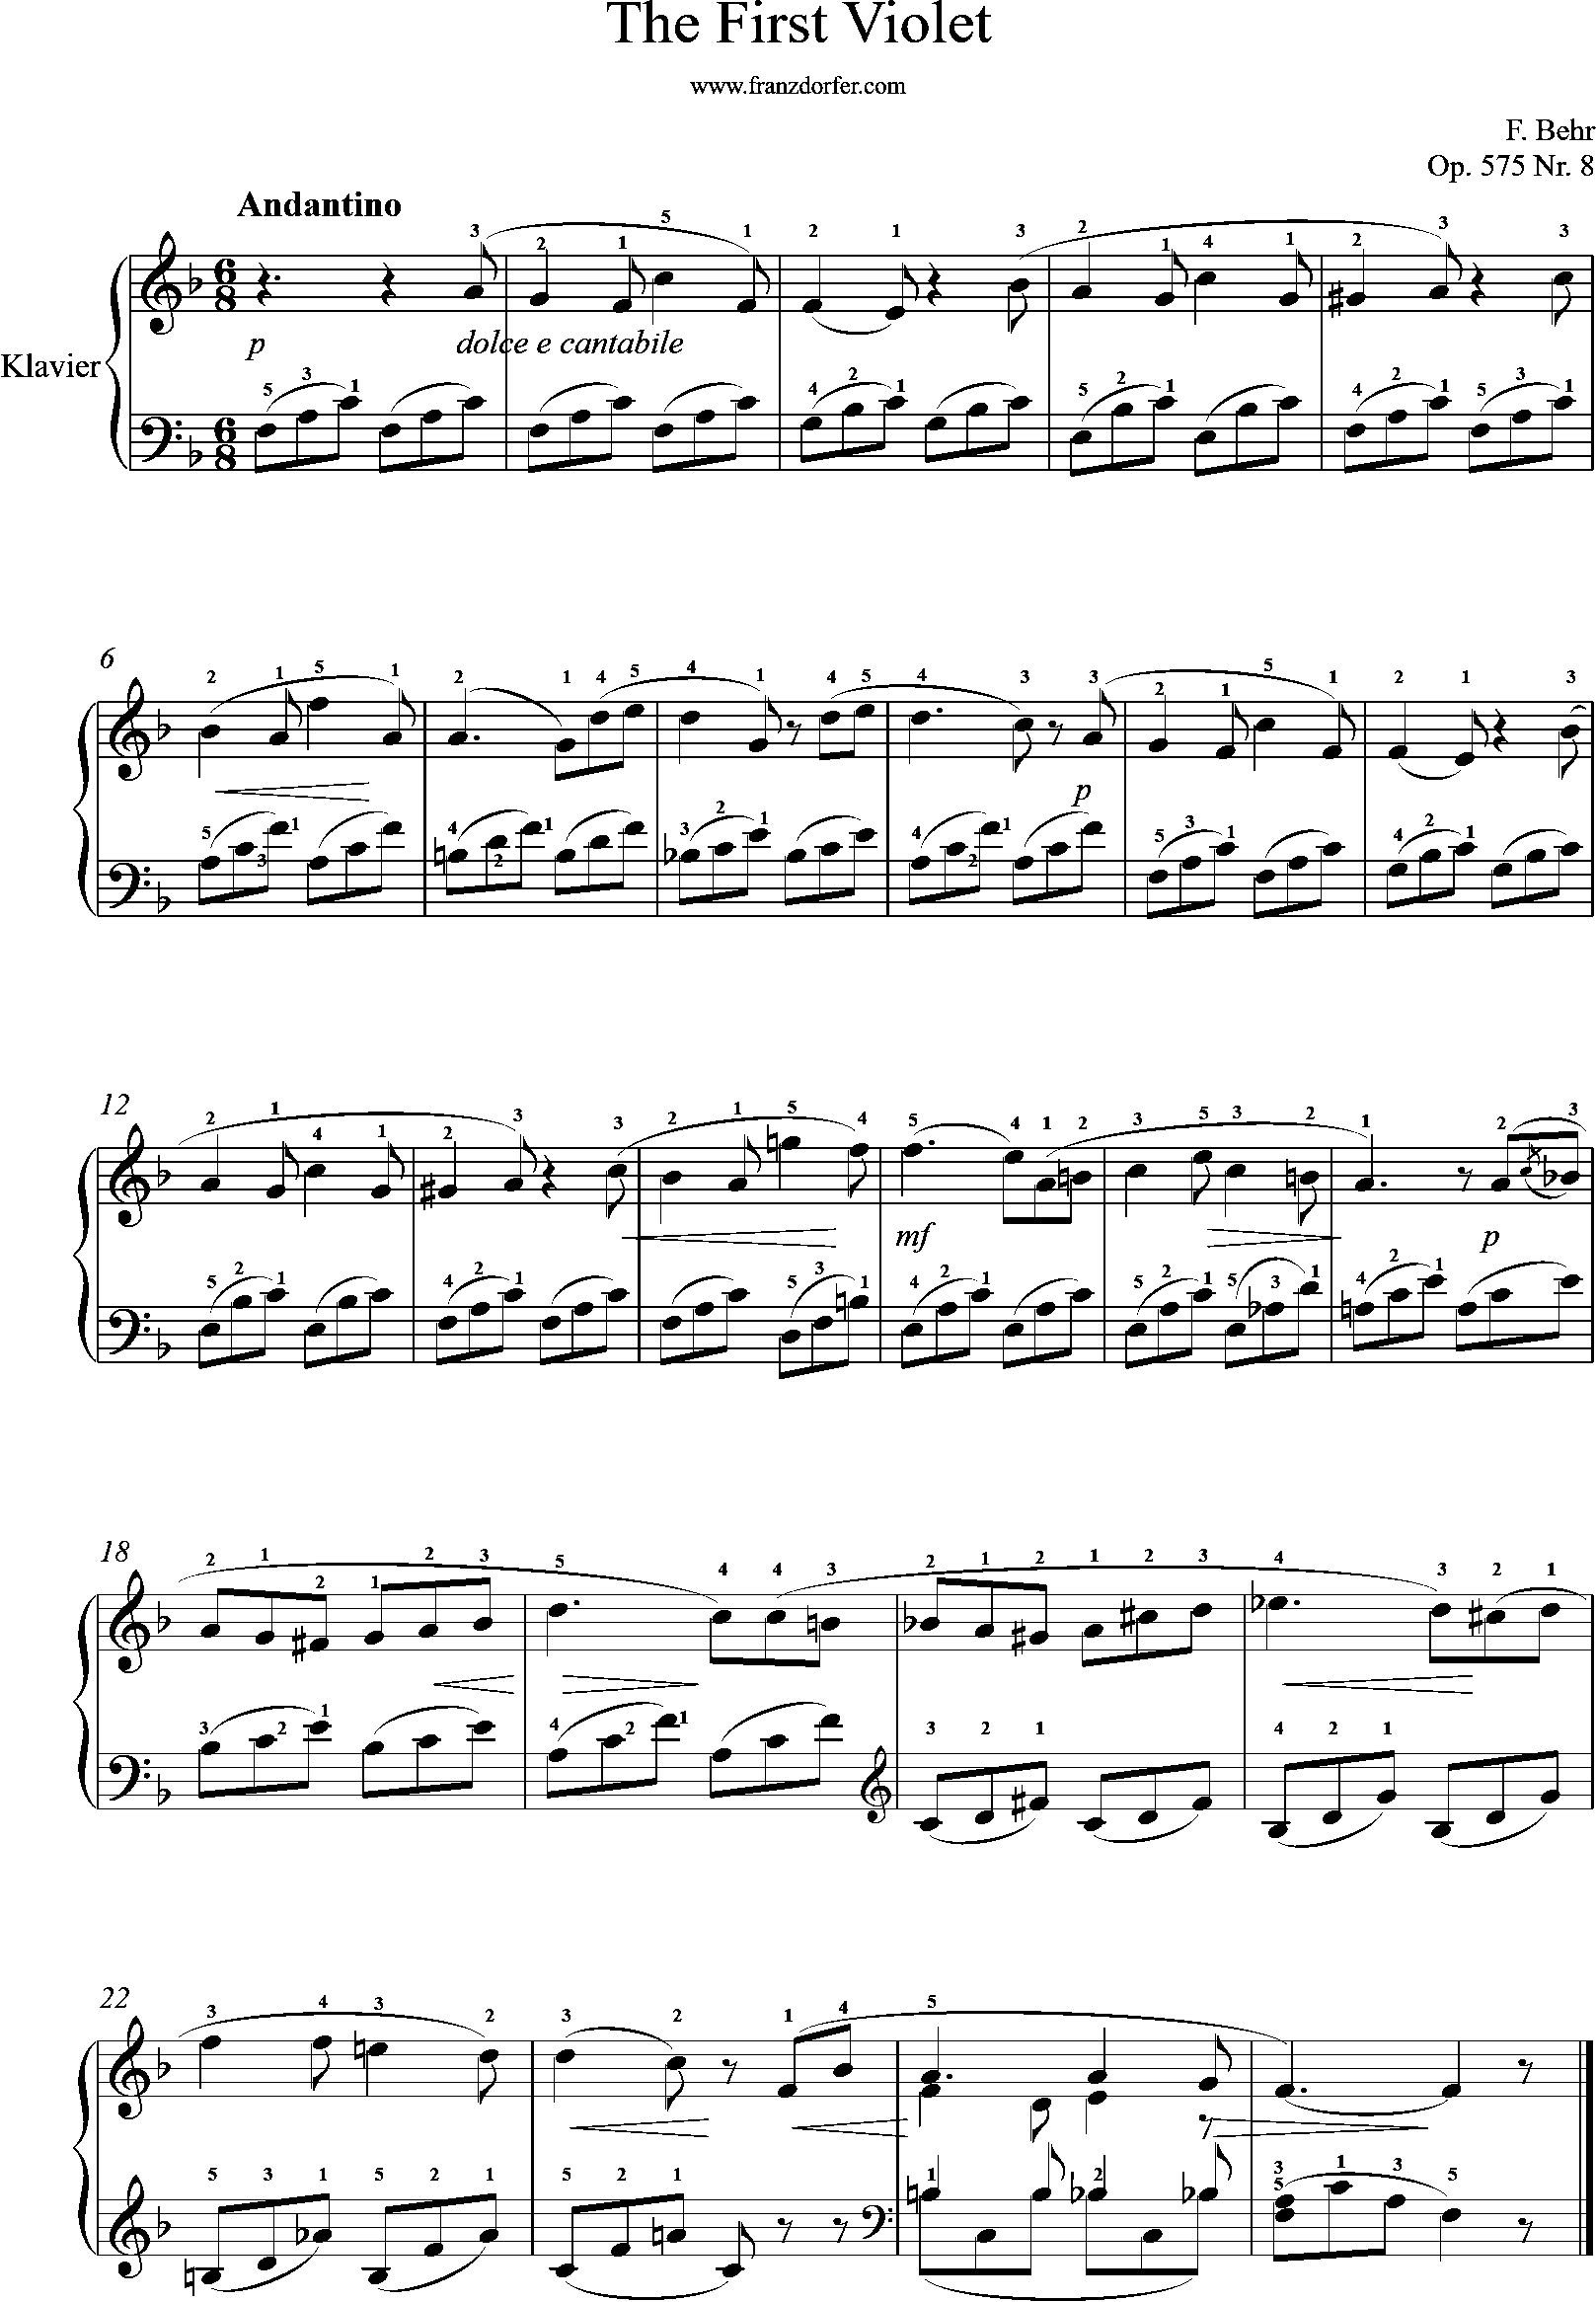 klaviernoten, The First Violet, op575-8, F-Behr